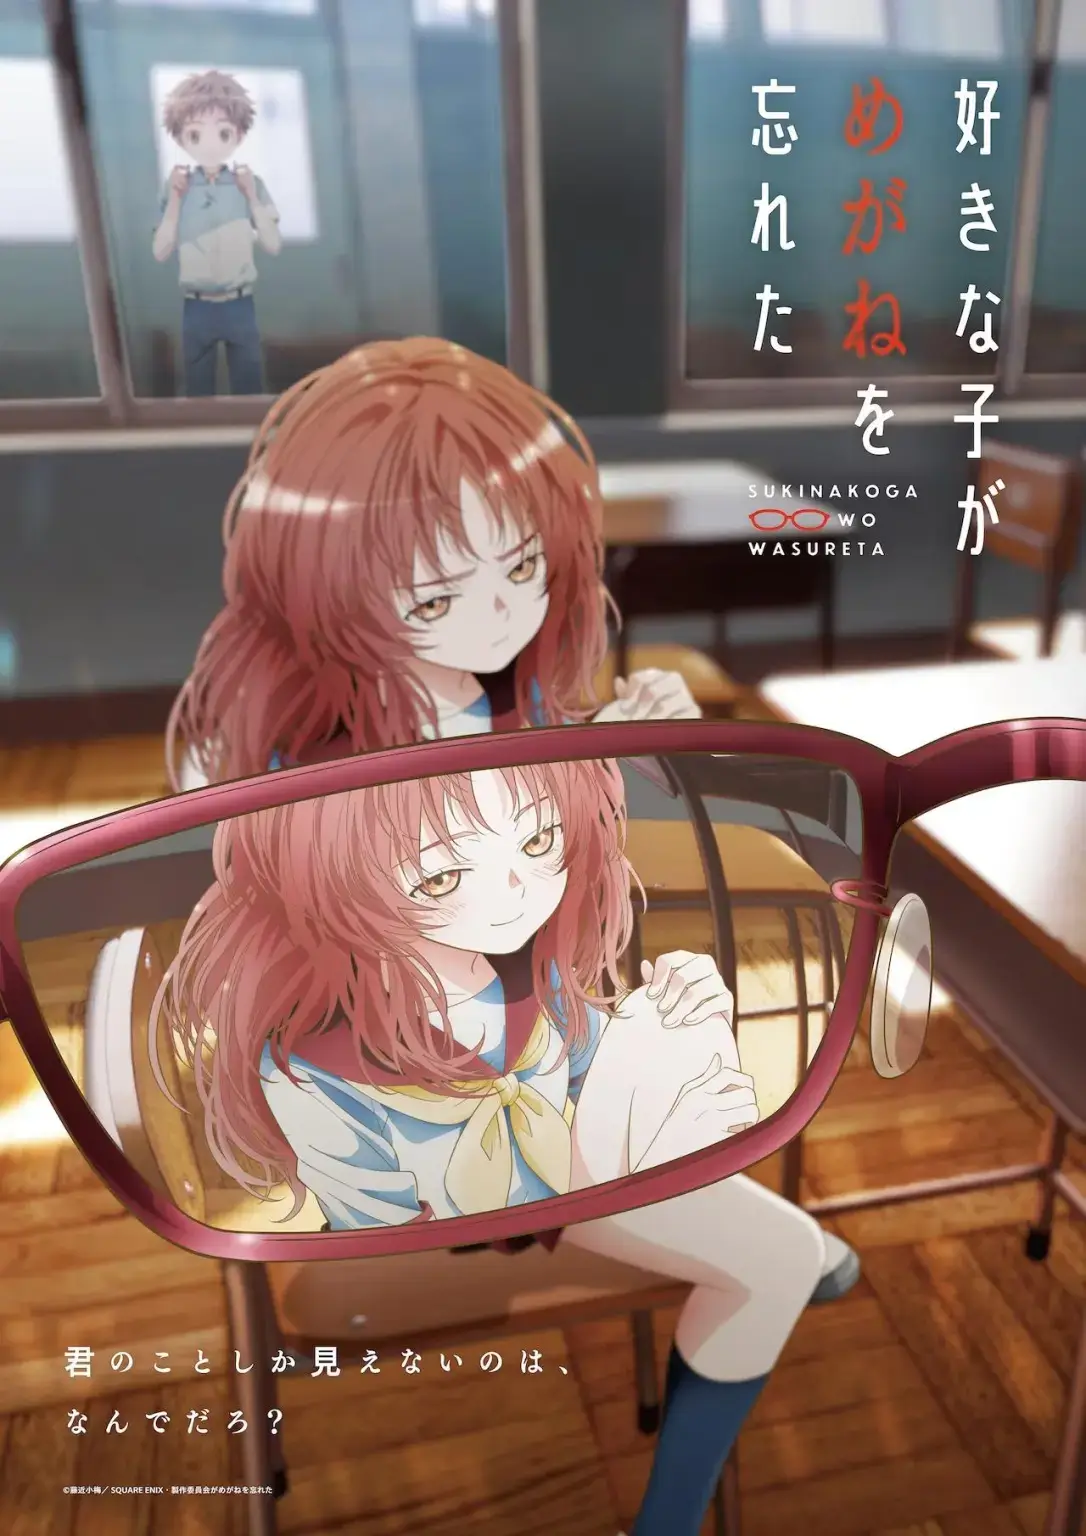 O site oficial da adaptação para série anime do mangá Suki na Ko ga Megane wo Wasureta (The Girl I Like Forgot Her Glasses), de Koume Fujichika, que estreia em julho de 2023, divulgou um trailer e uma imagem promocional.